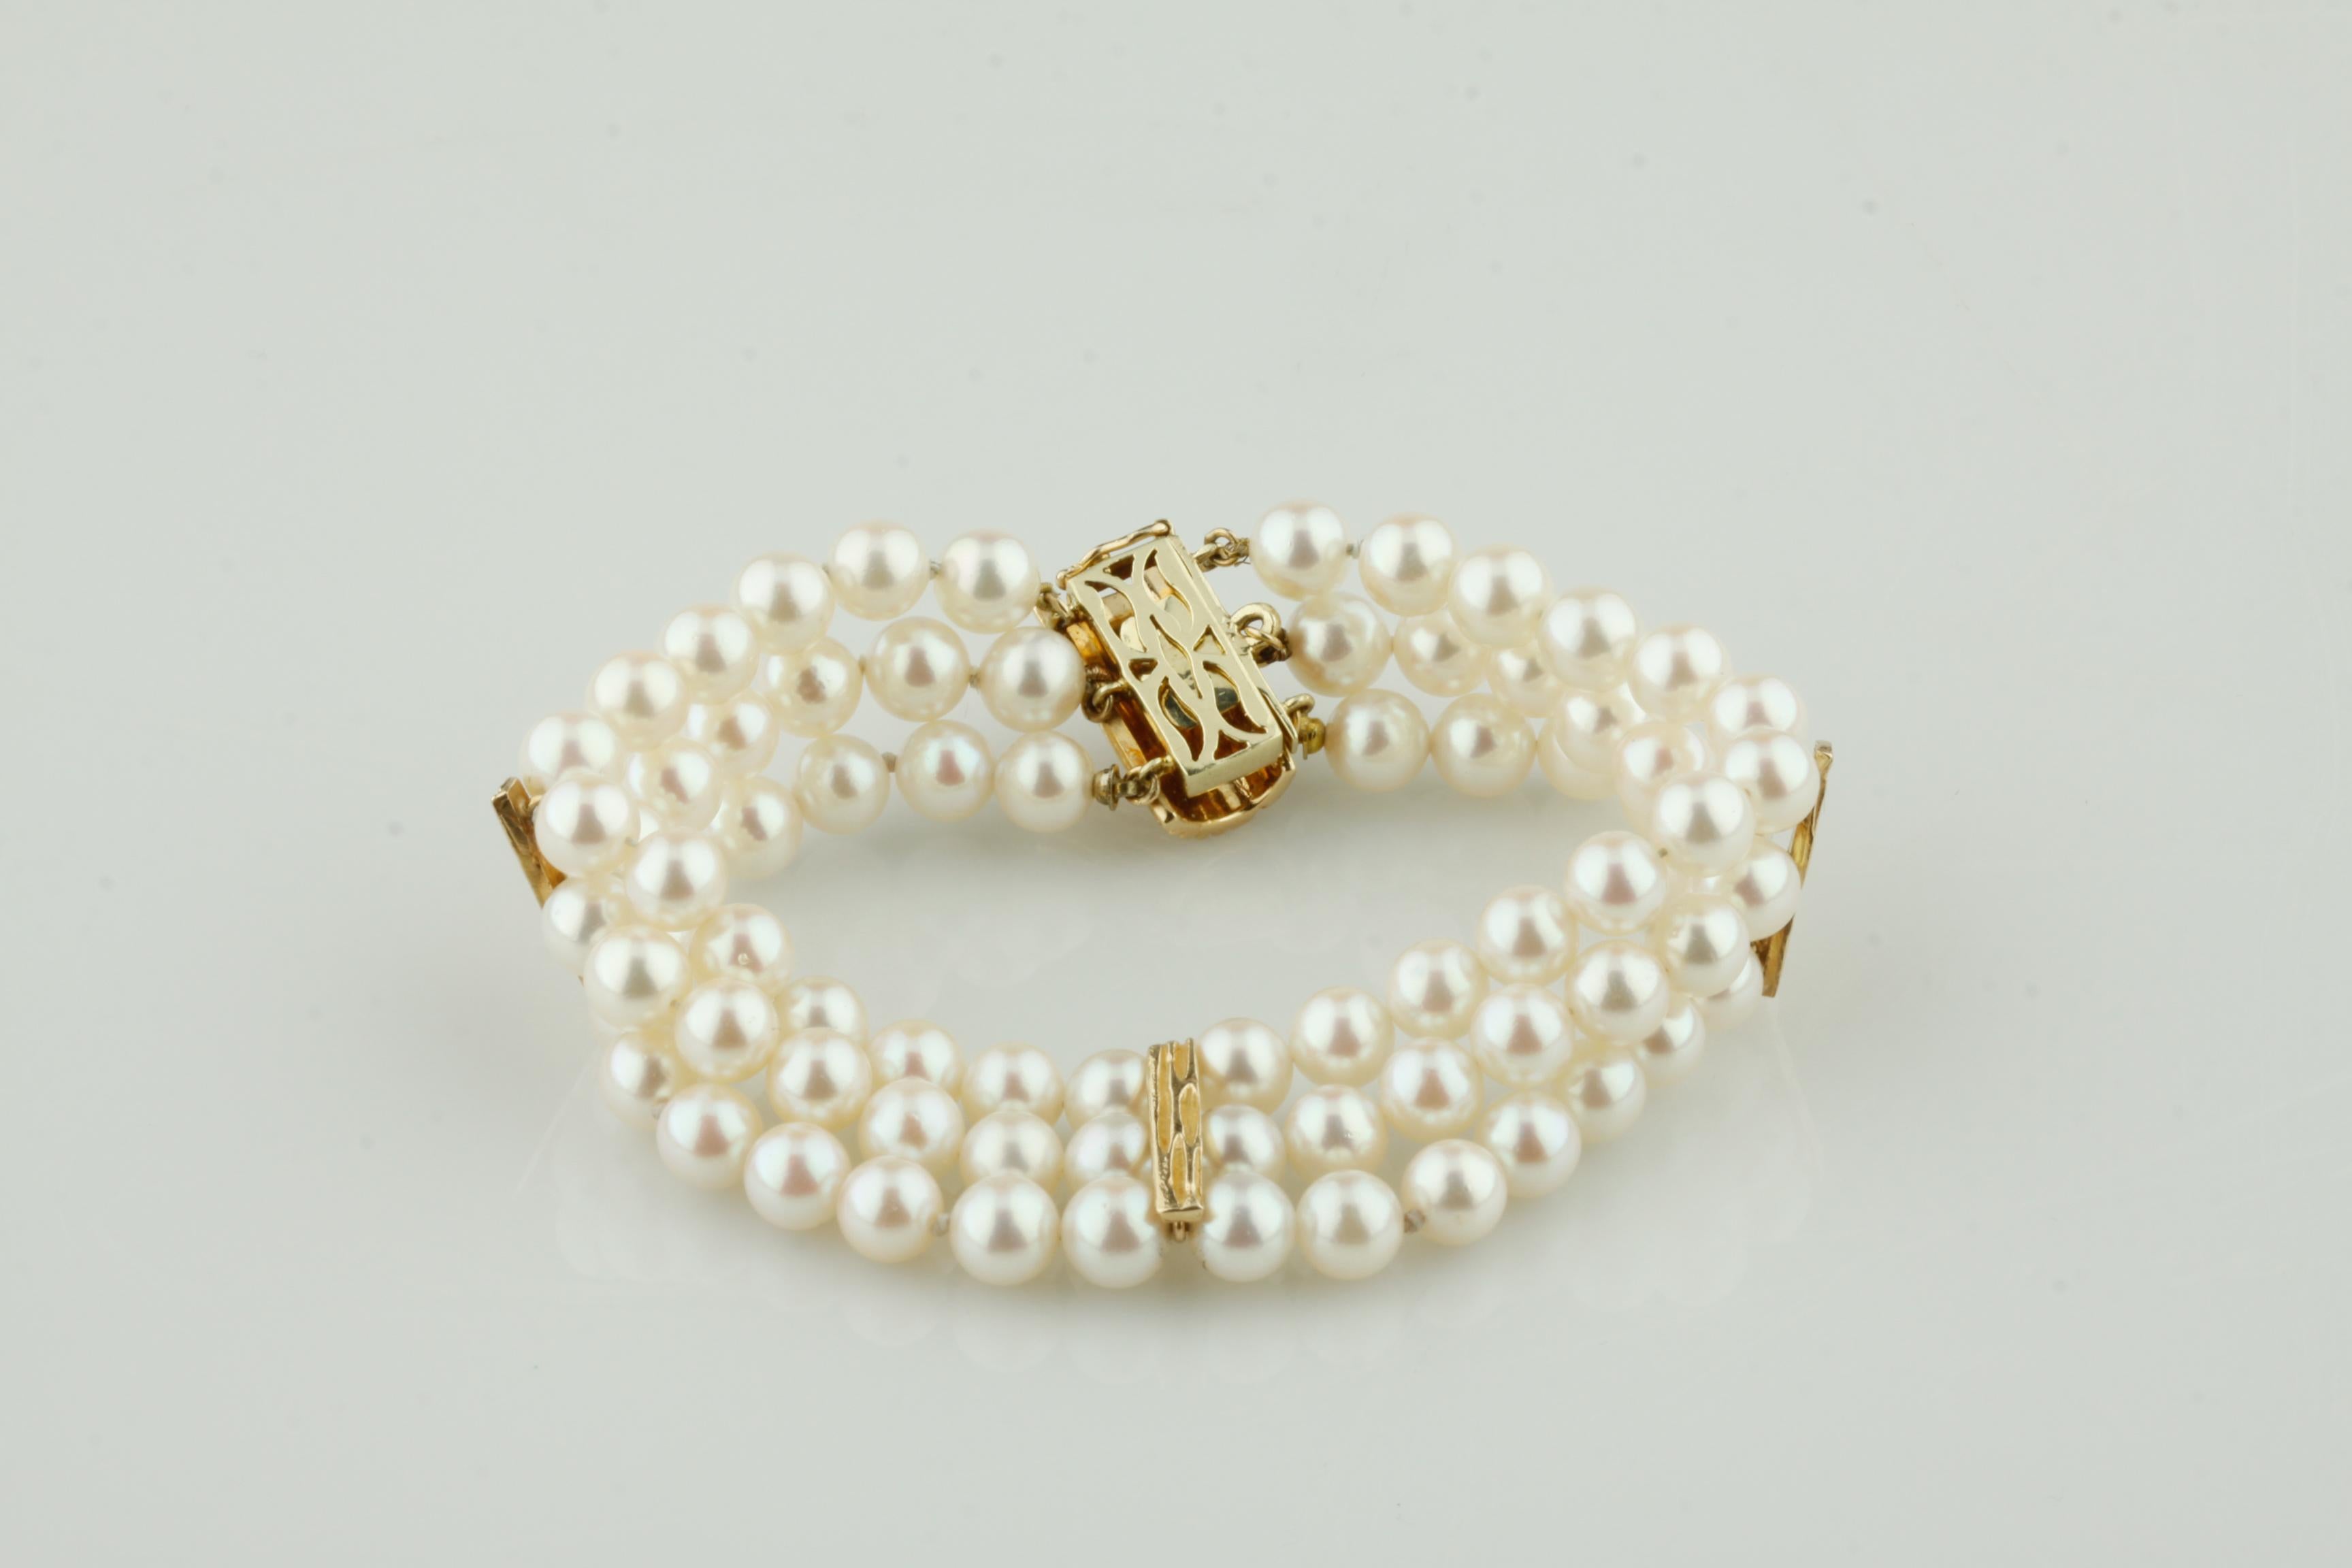 Magnifique bracelet de perles 
Comprend trois rangs de perles rondes
Perles d'environ 5 à 6 mm de diamètre
Belle perlescence blanchâtre, rosâtre et mauve.
78 Perles Total
Trois accents en forme de barre en or jaune 14k
Fermoir en or jaune